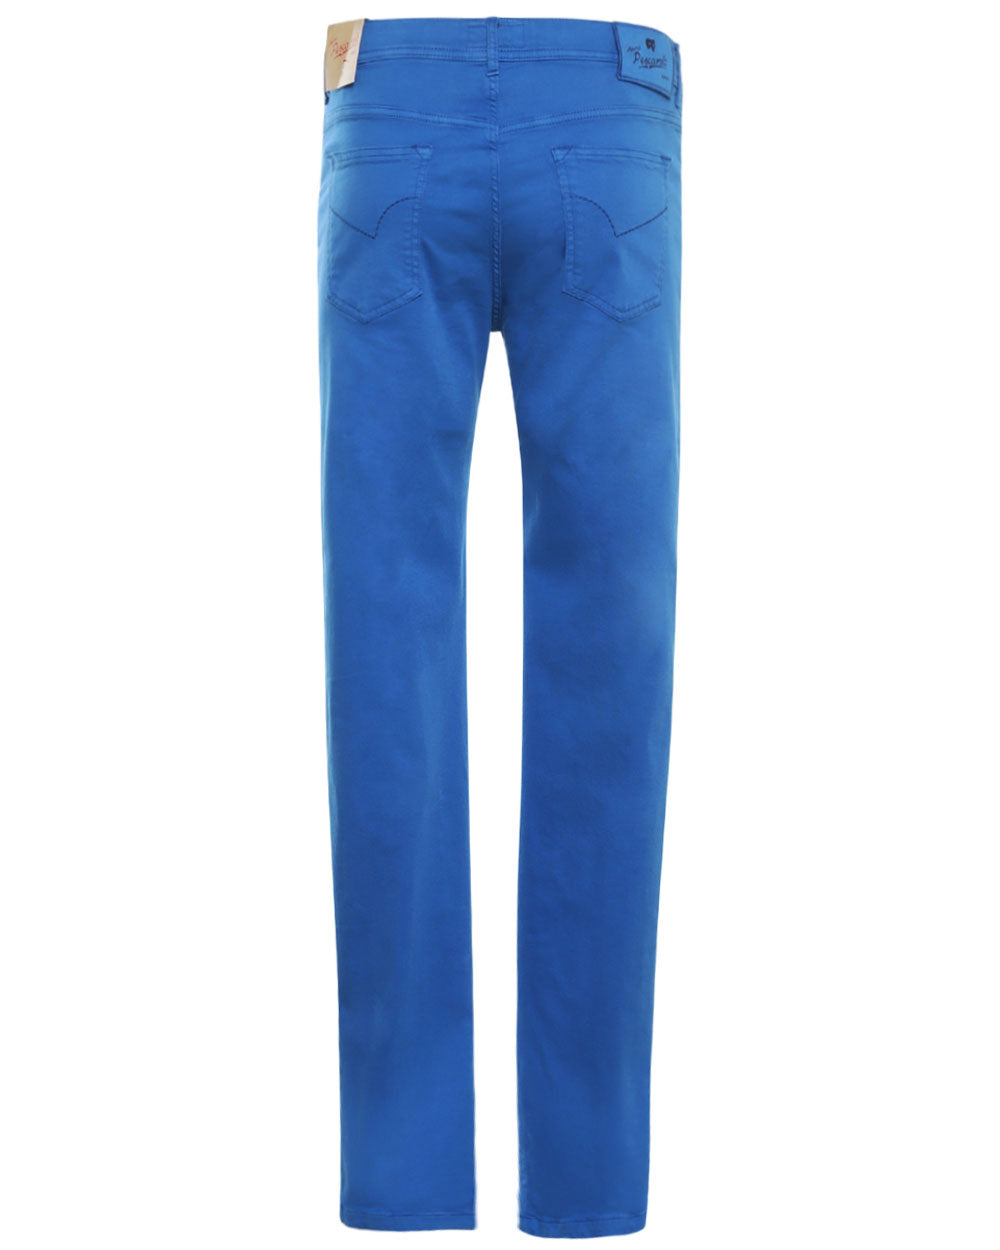 Cotton Blend Stretch Denim Pant in Bright Blue